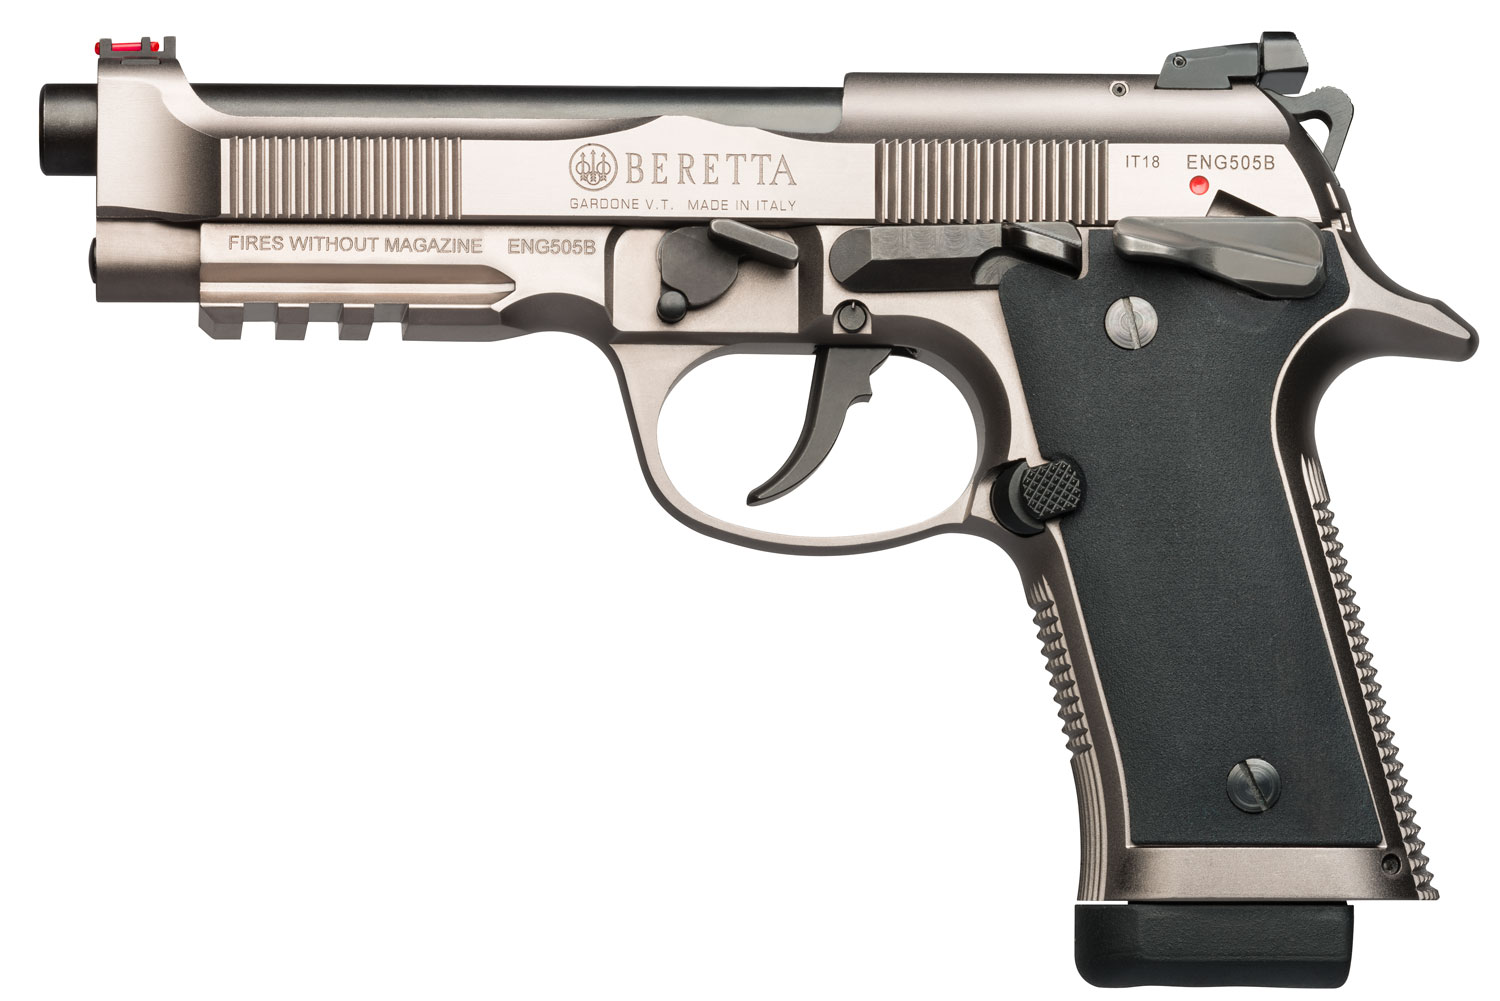 Beretta X Beretta J Xr Semi Auto Pistols At Gunbroker Com